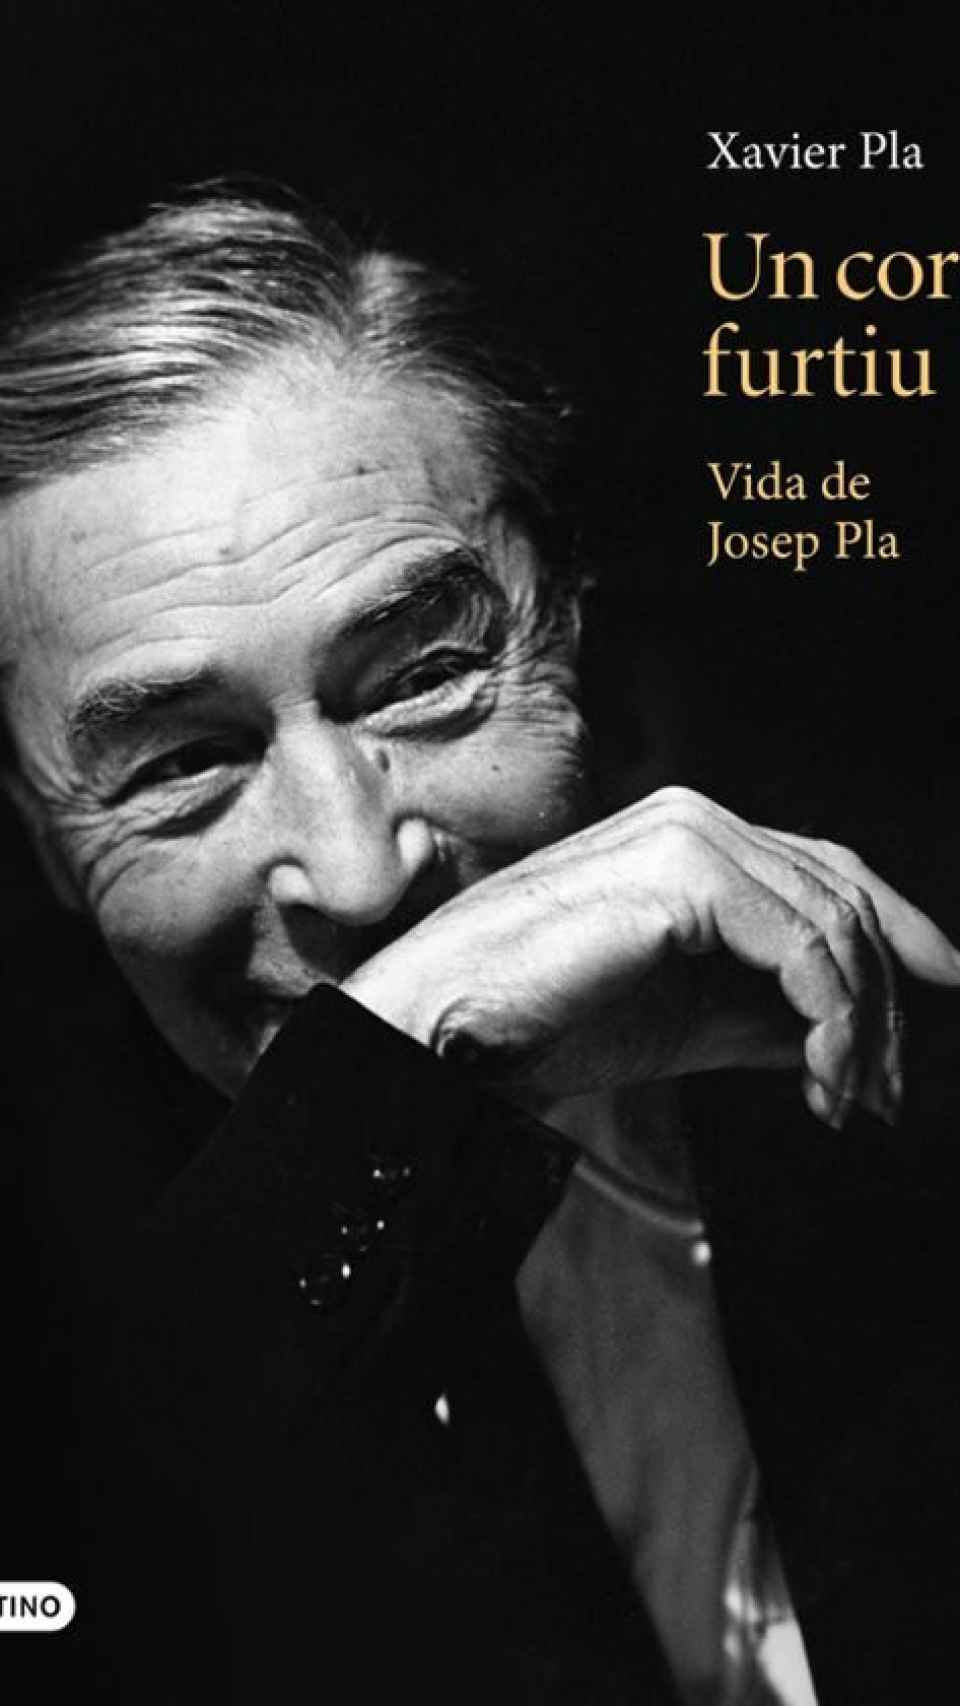 Josep Pla, en la portada de la biografía de Xavier Pla